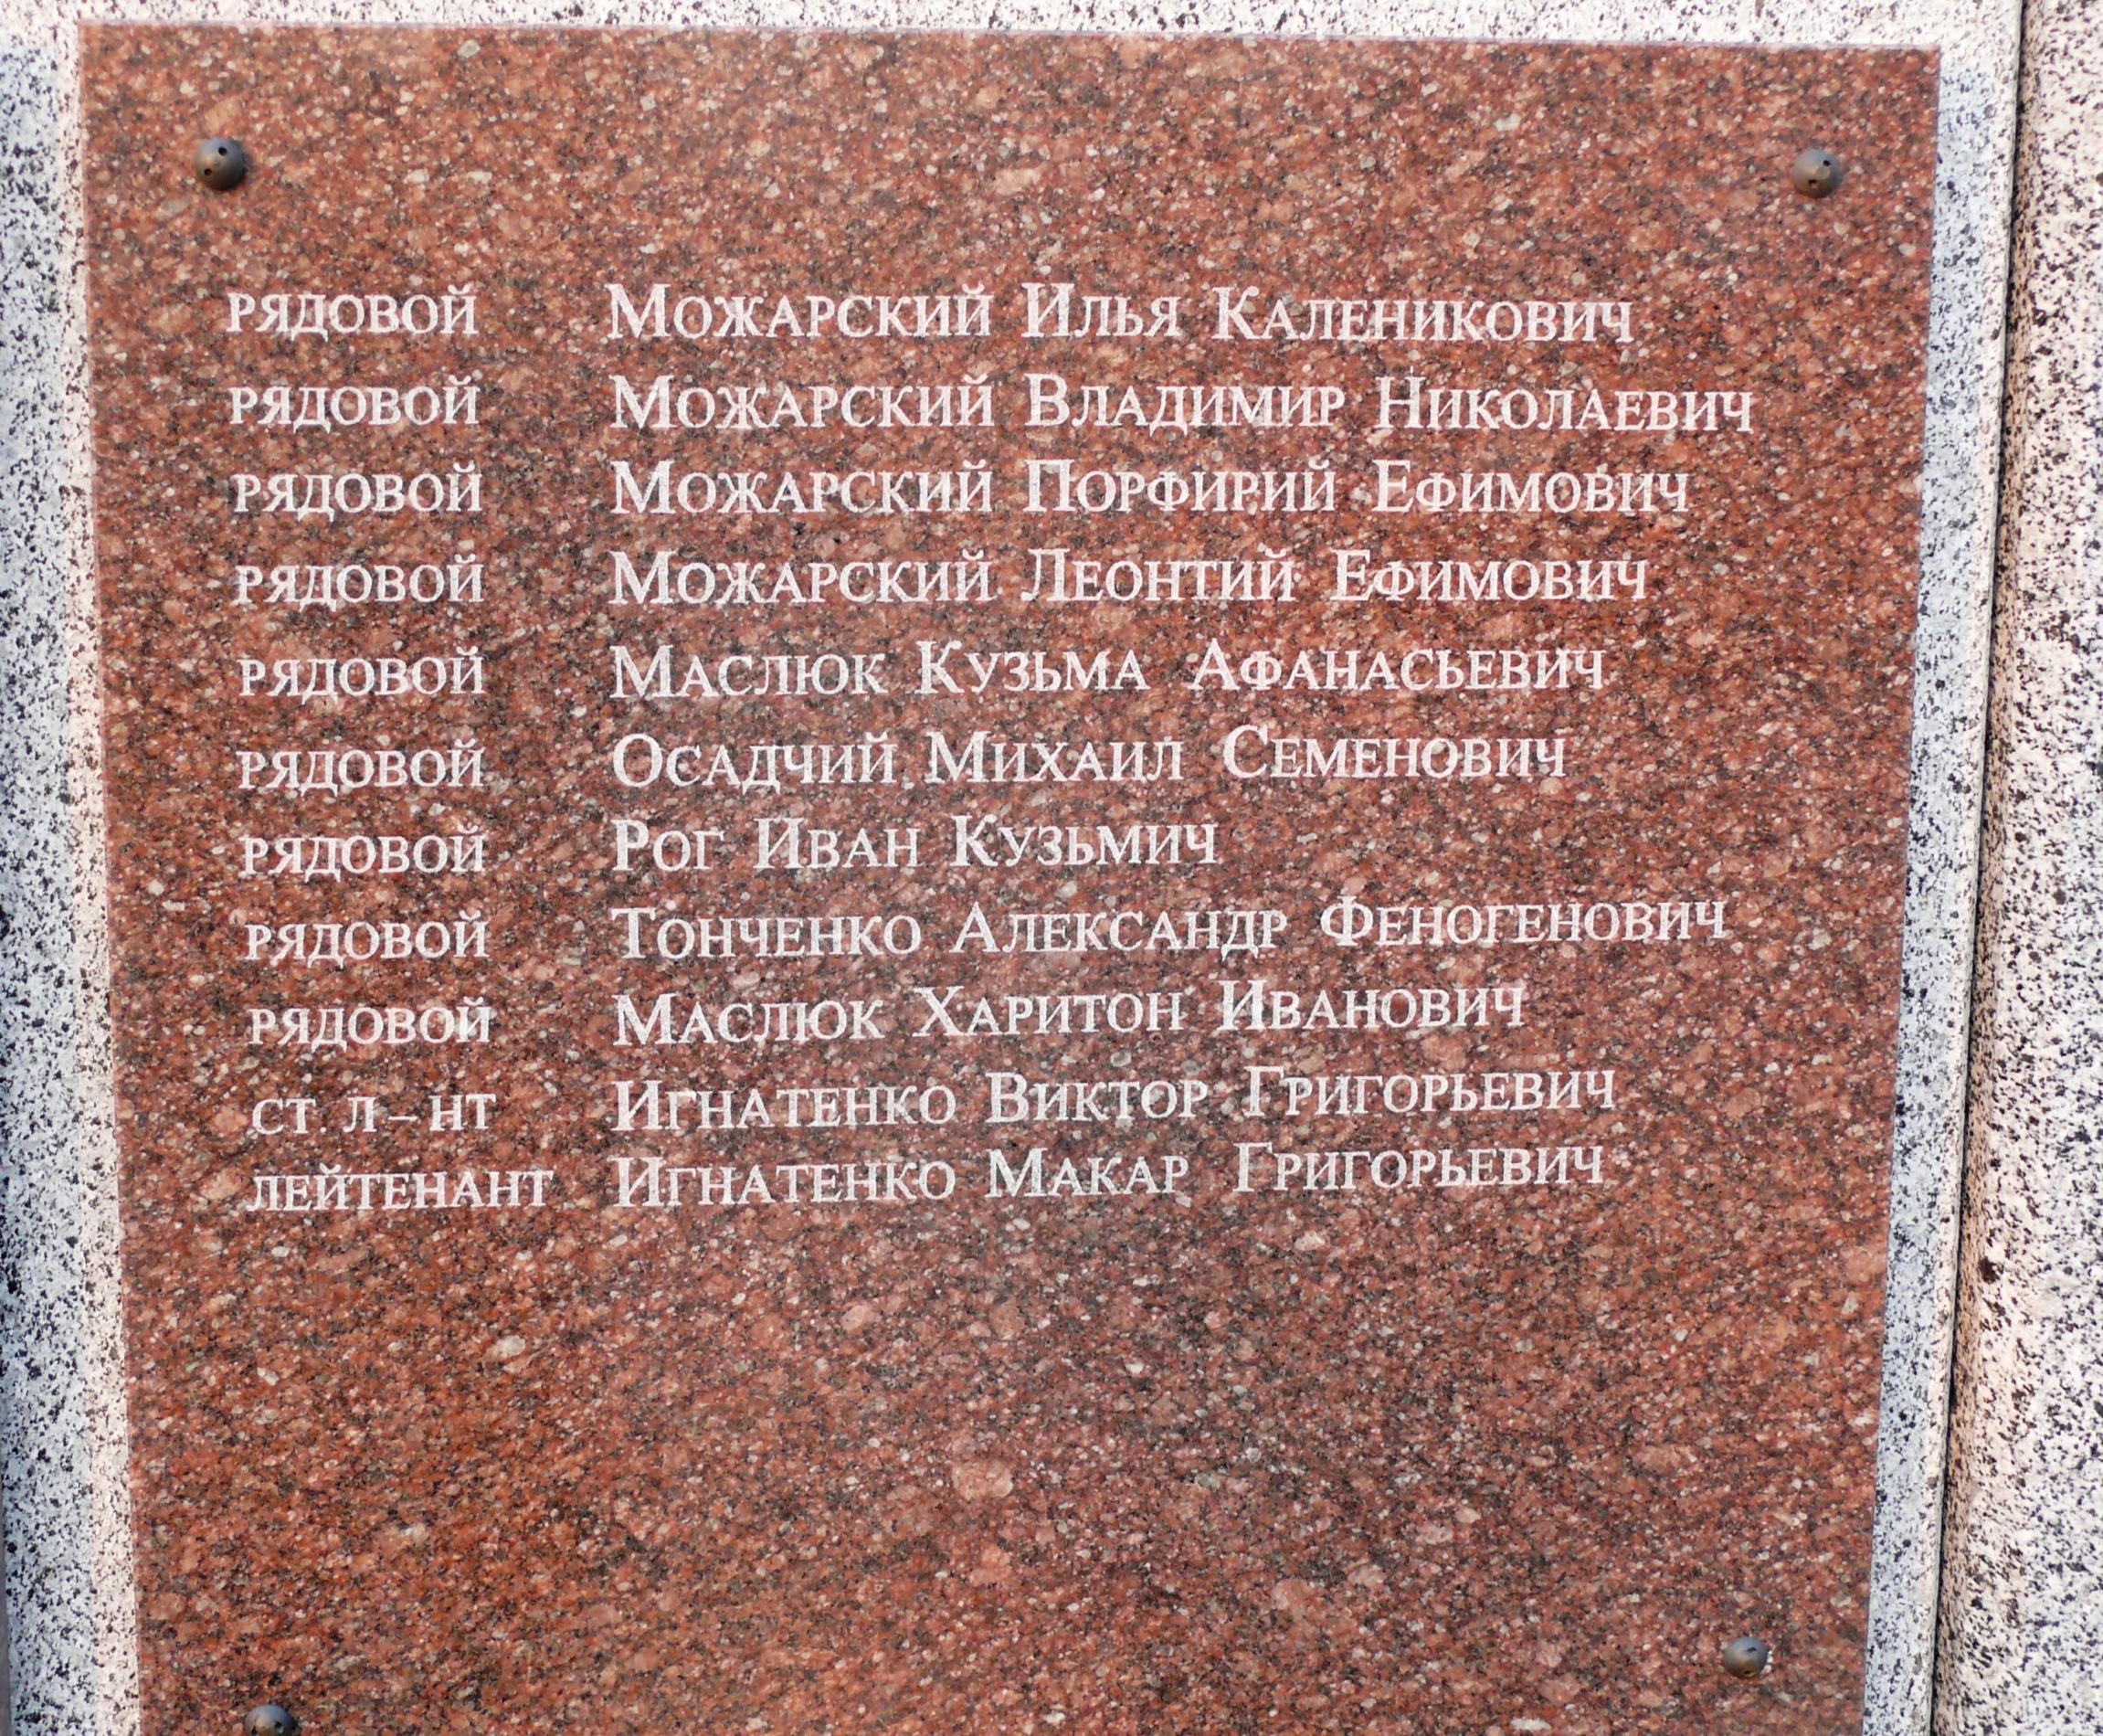 Мемориальные плиты односельчанам в с. Мостыще Киево-Святошинского района